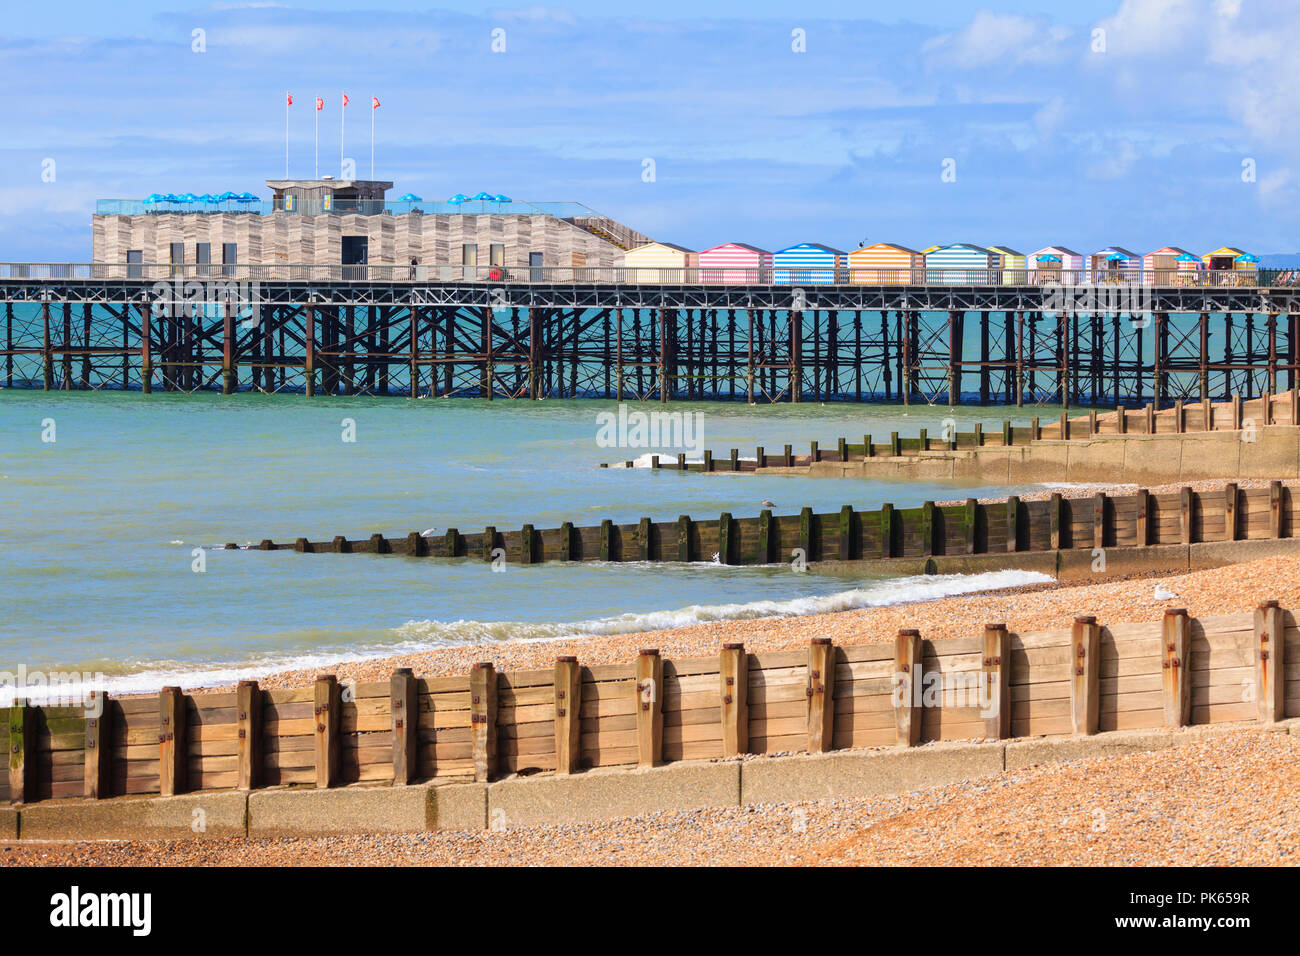 Hastings pier e spiaggia 2018, east sussex, Regno Unito Foto Stock